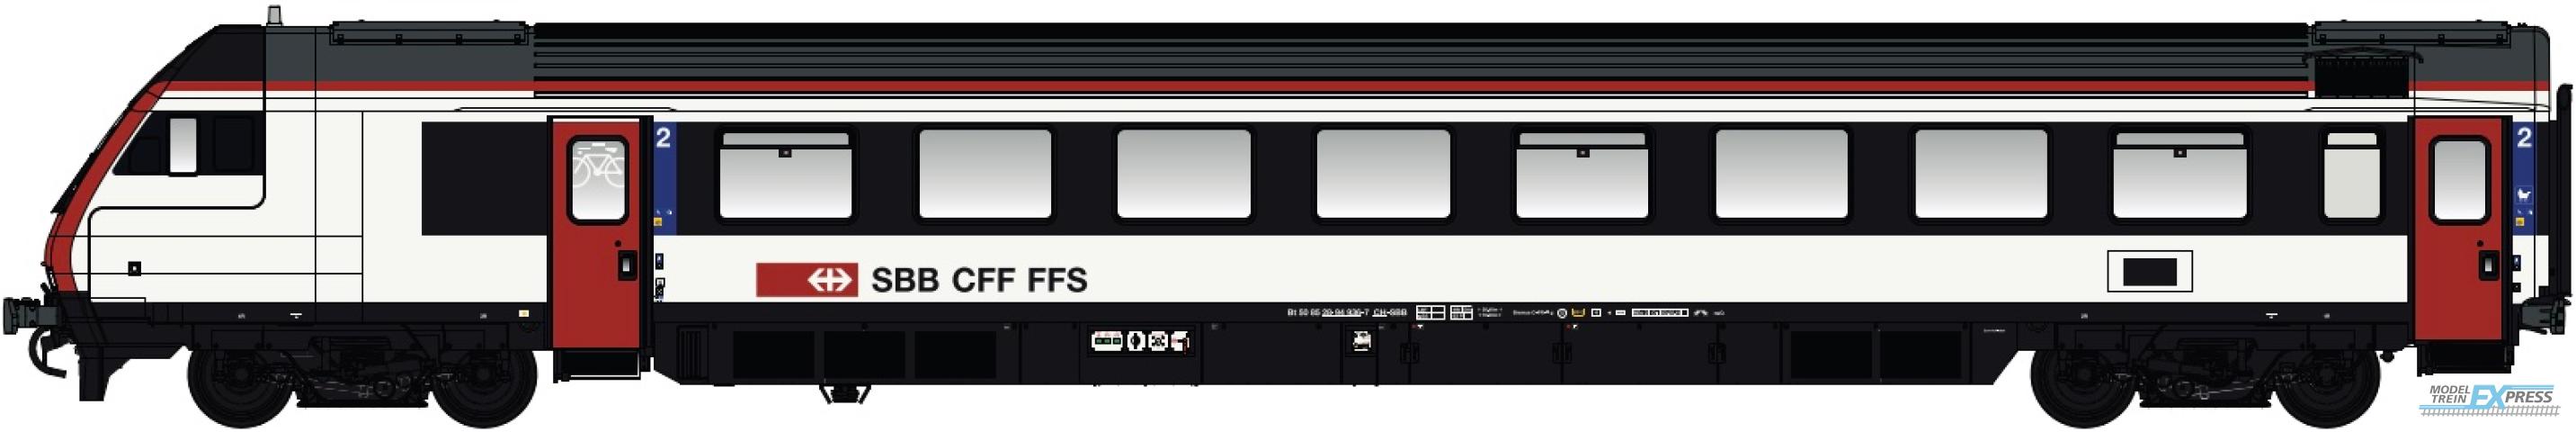 LS Models 472201DC InterCity-stuurstandwagen 2e klasse, nieuwe kleurstelling vanaf 2022 met rode deuren en rode dakrand  /  Ep. VI  /  SBB  /  HO  /  DC  /  1 P.